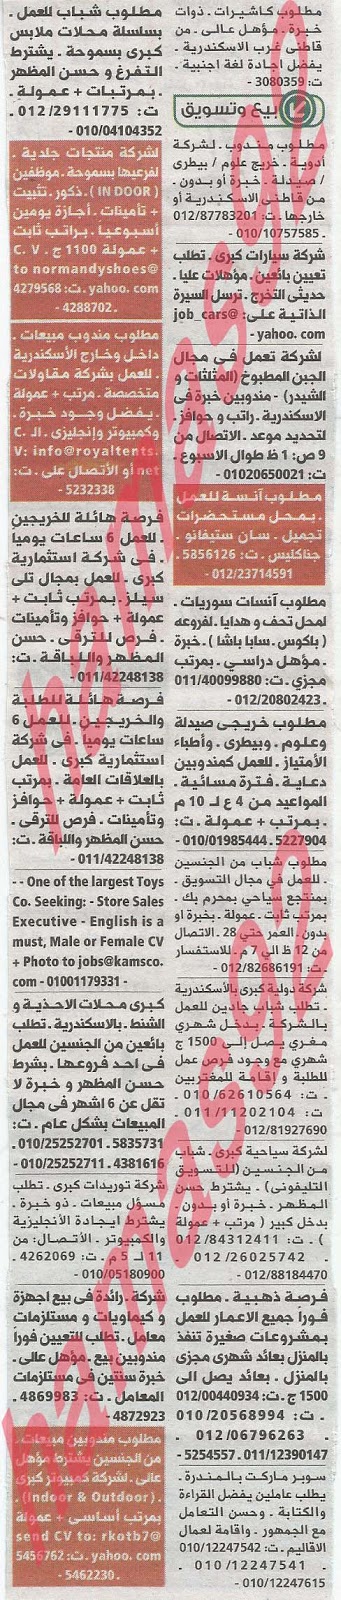 وظائف خالية فى جريدة الوسيط الاسكندرية الثلاثاء 14-05-2013 %D9%88+%D8%B3+%D8%B3+2